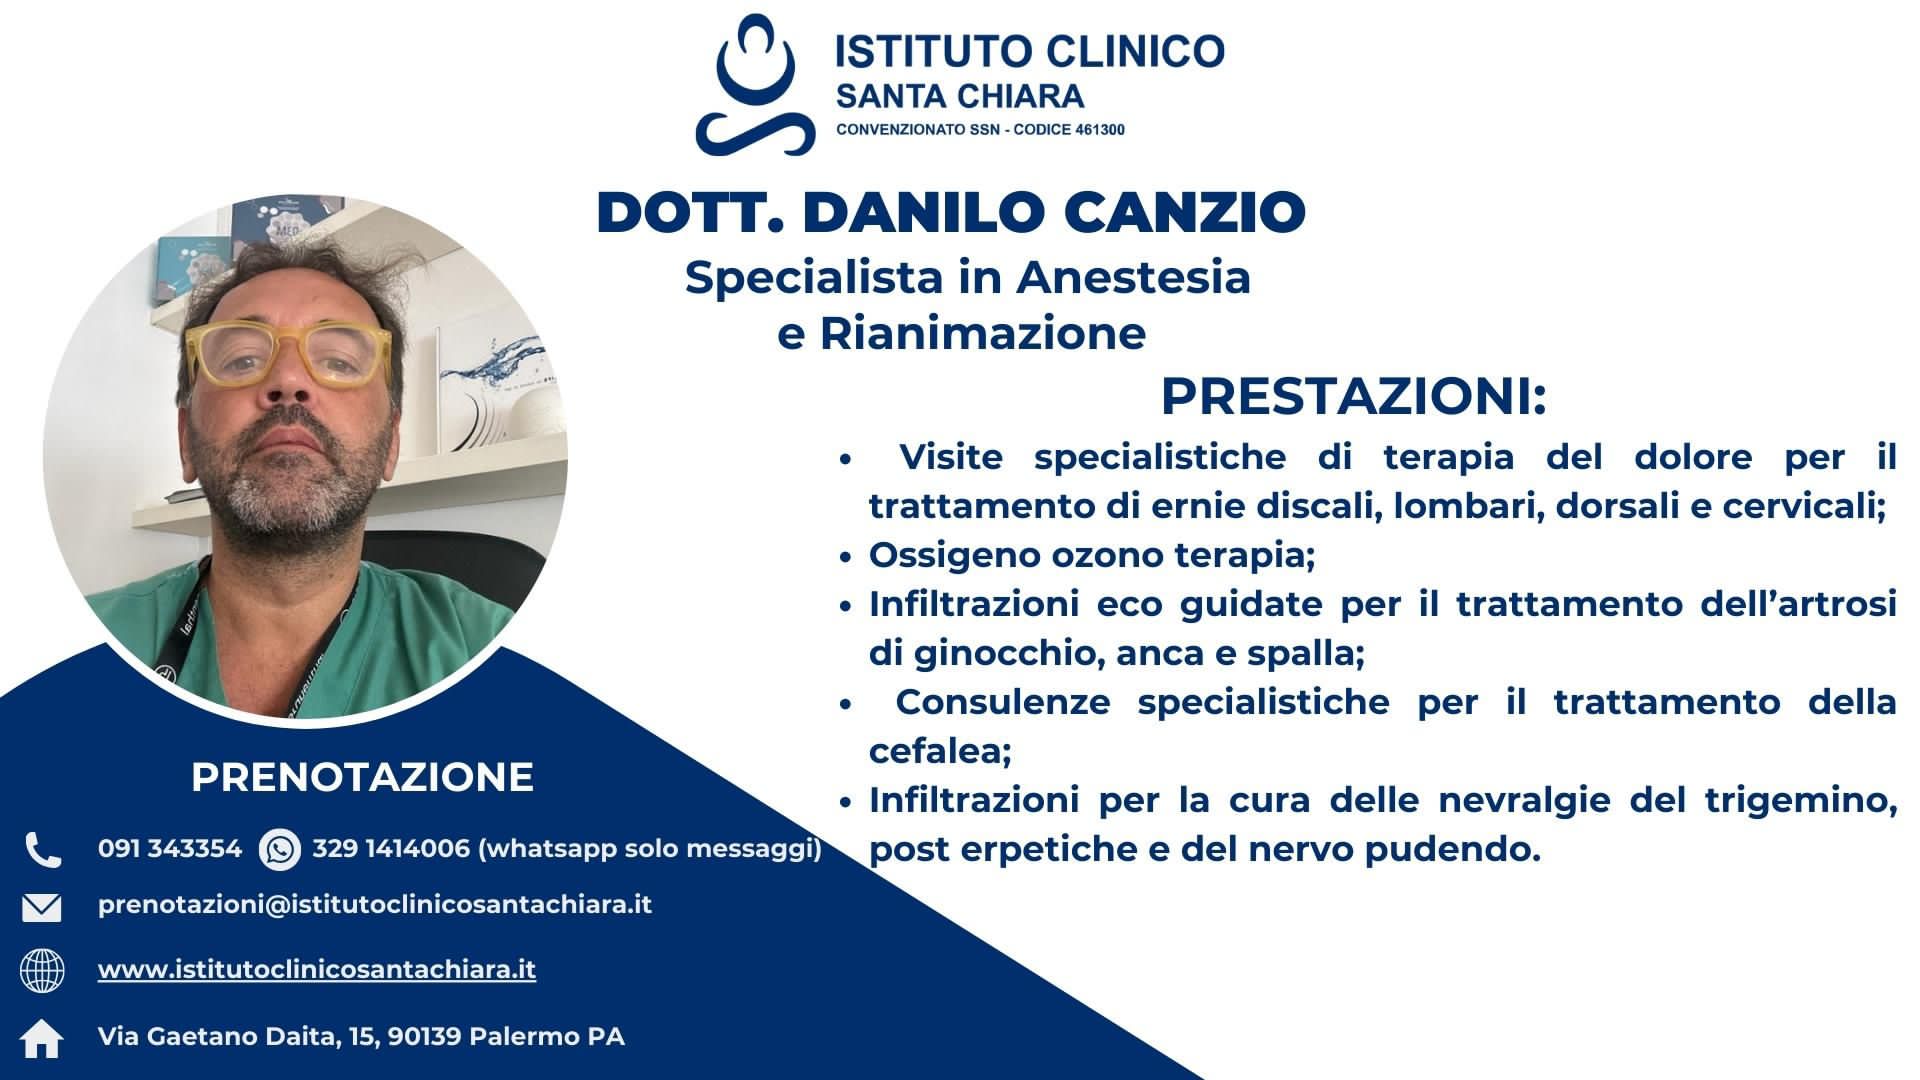 Dott. Danilo Canzio